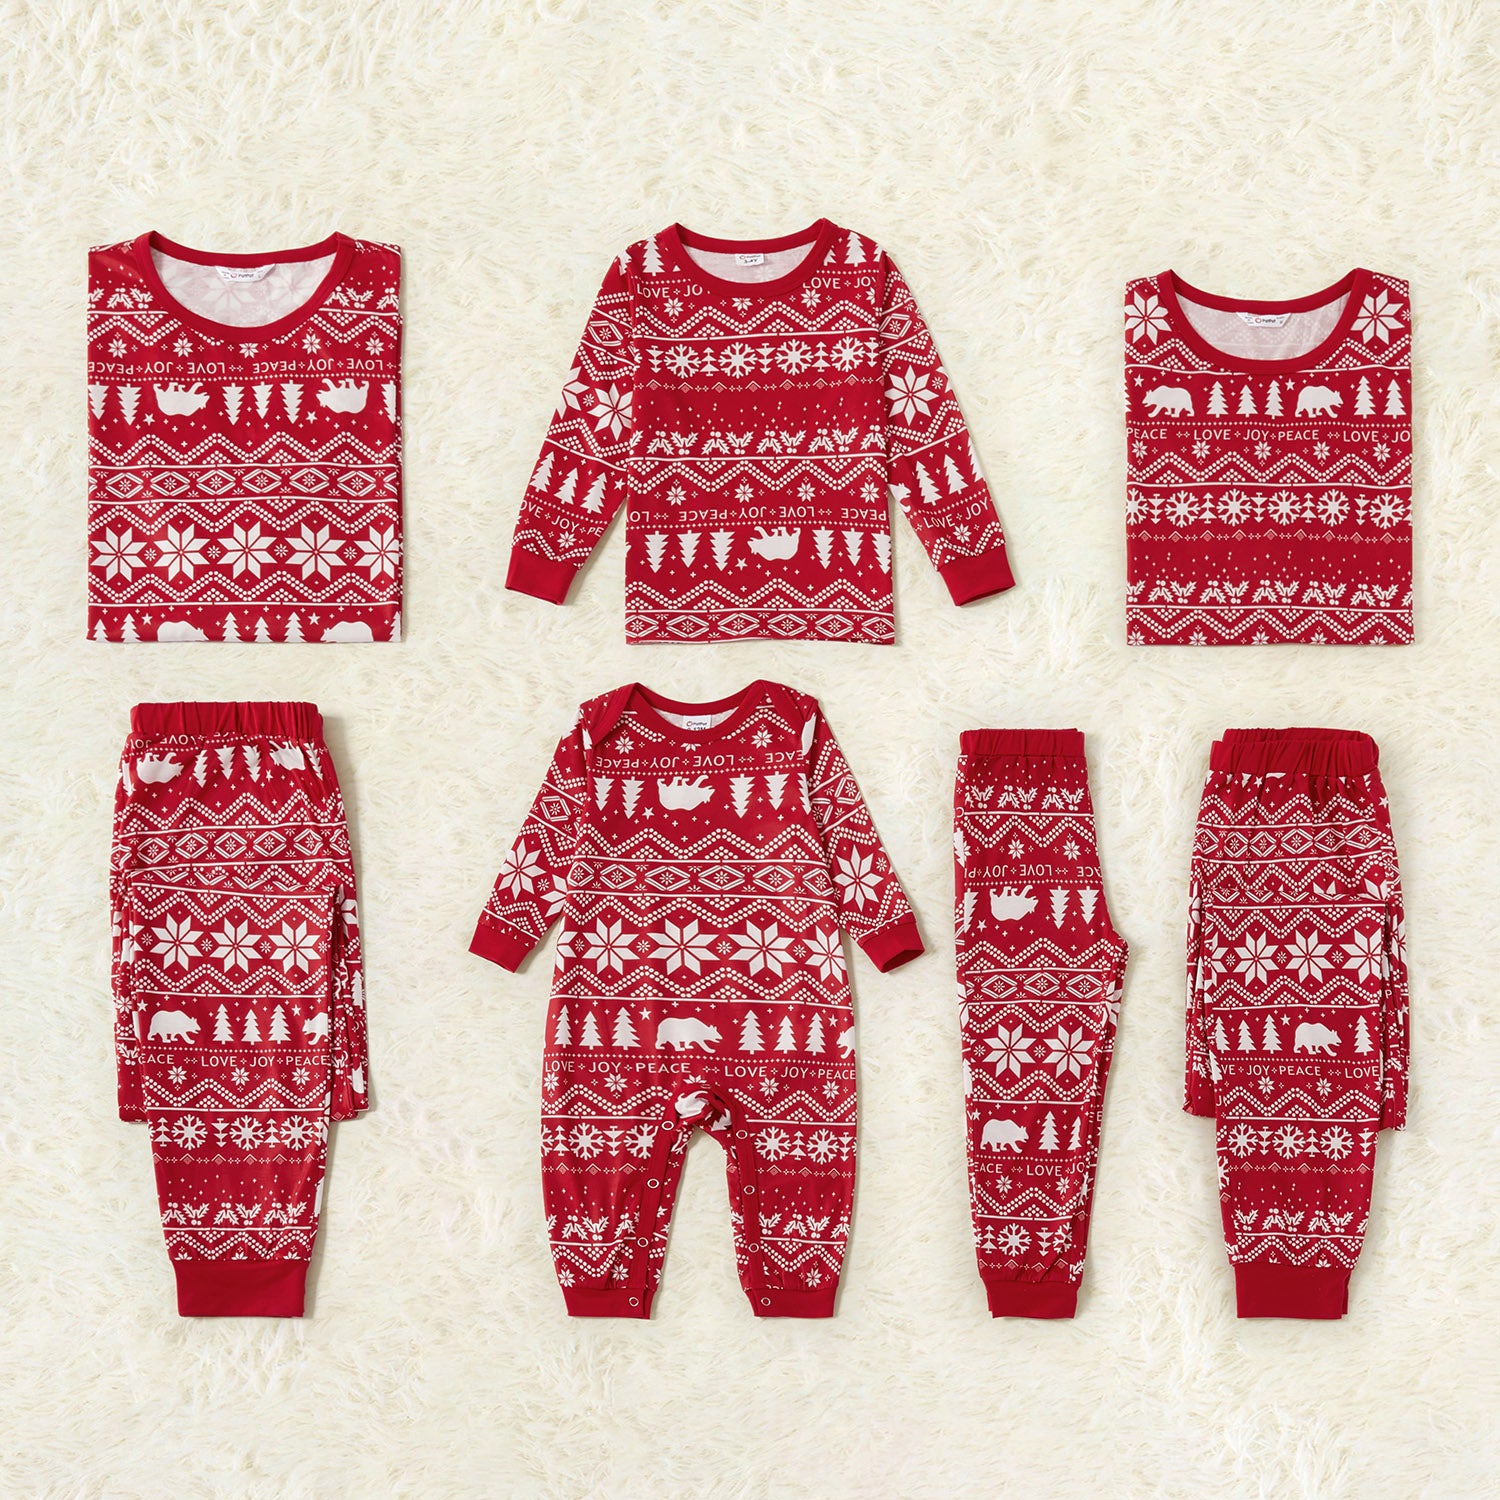 Traditional Christmas Print Family Matching Pajamas Sets(Flame resistant)